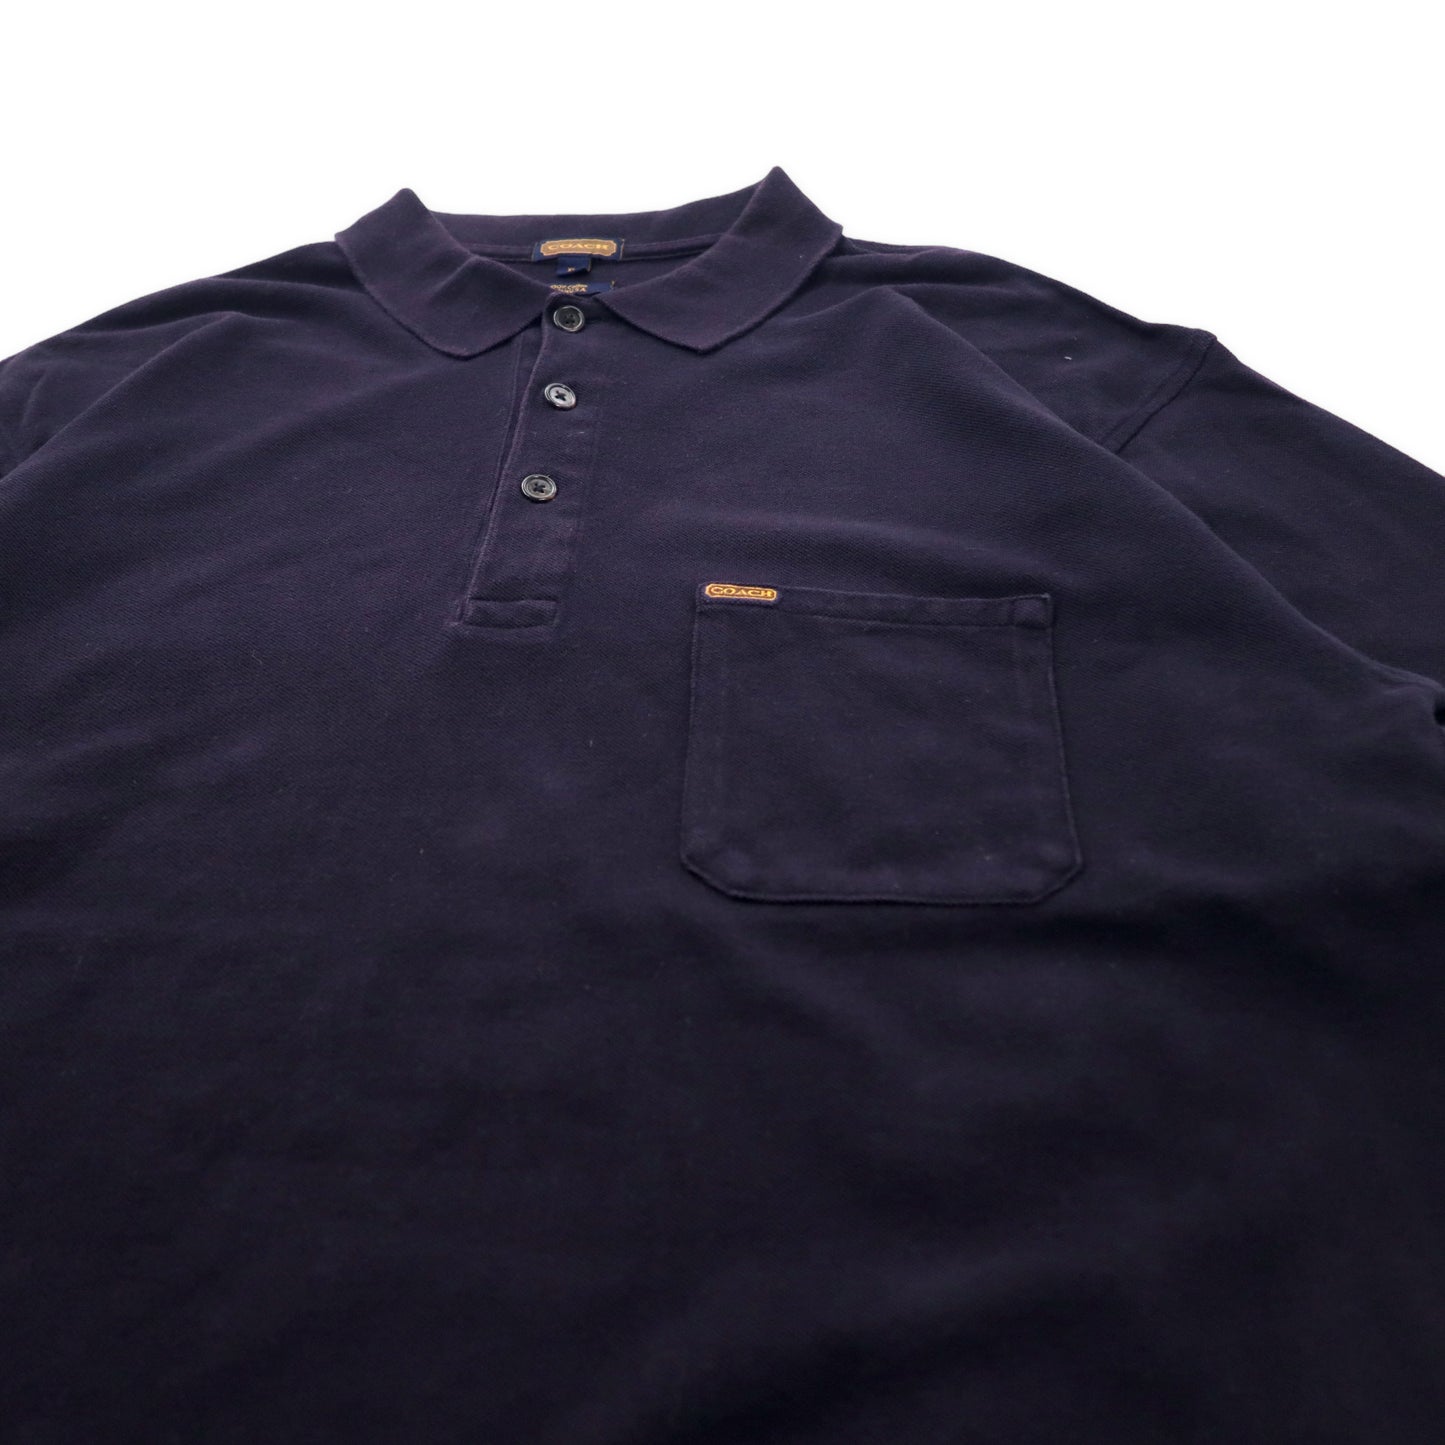 COACH USA製 ポロシャツ XL ブラック コットン ビッグサイズ